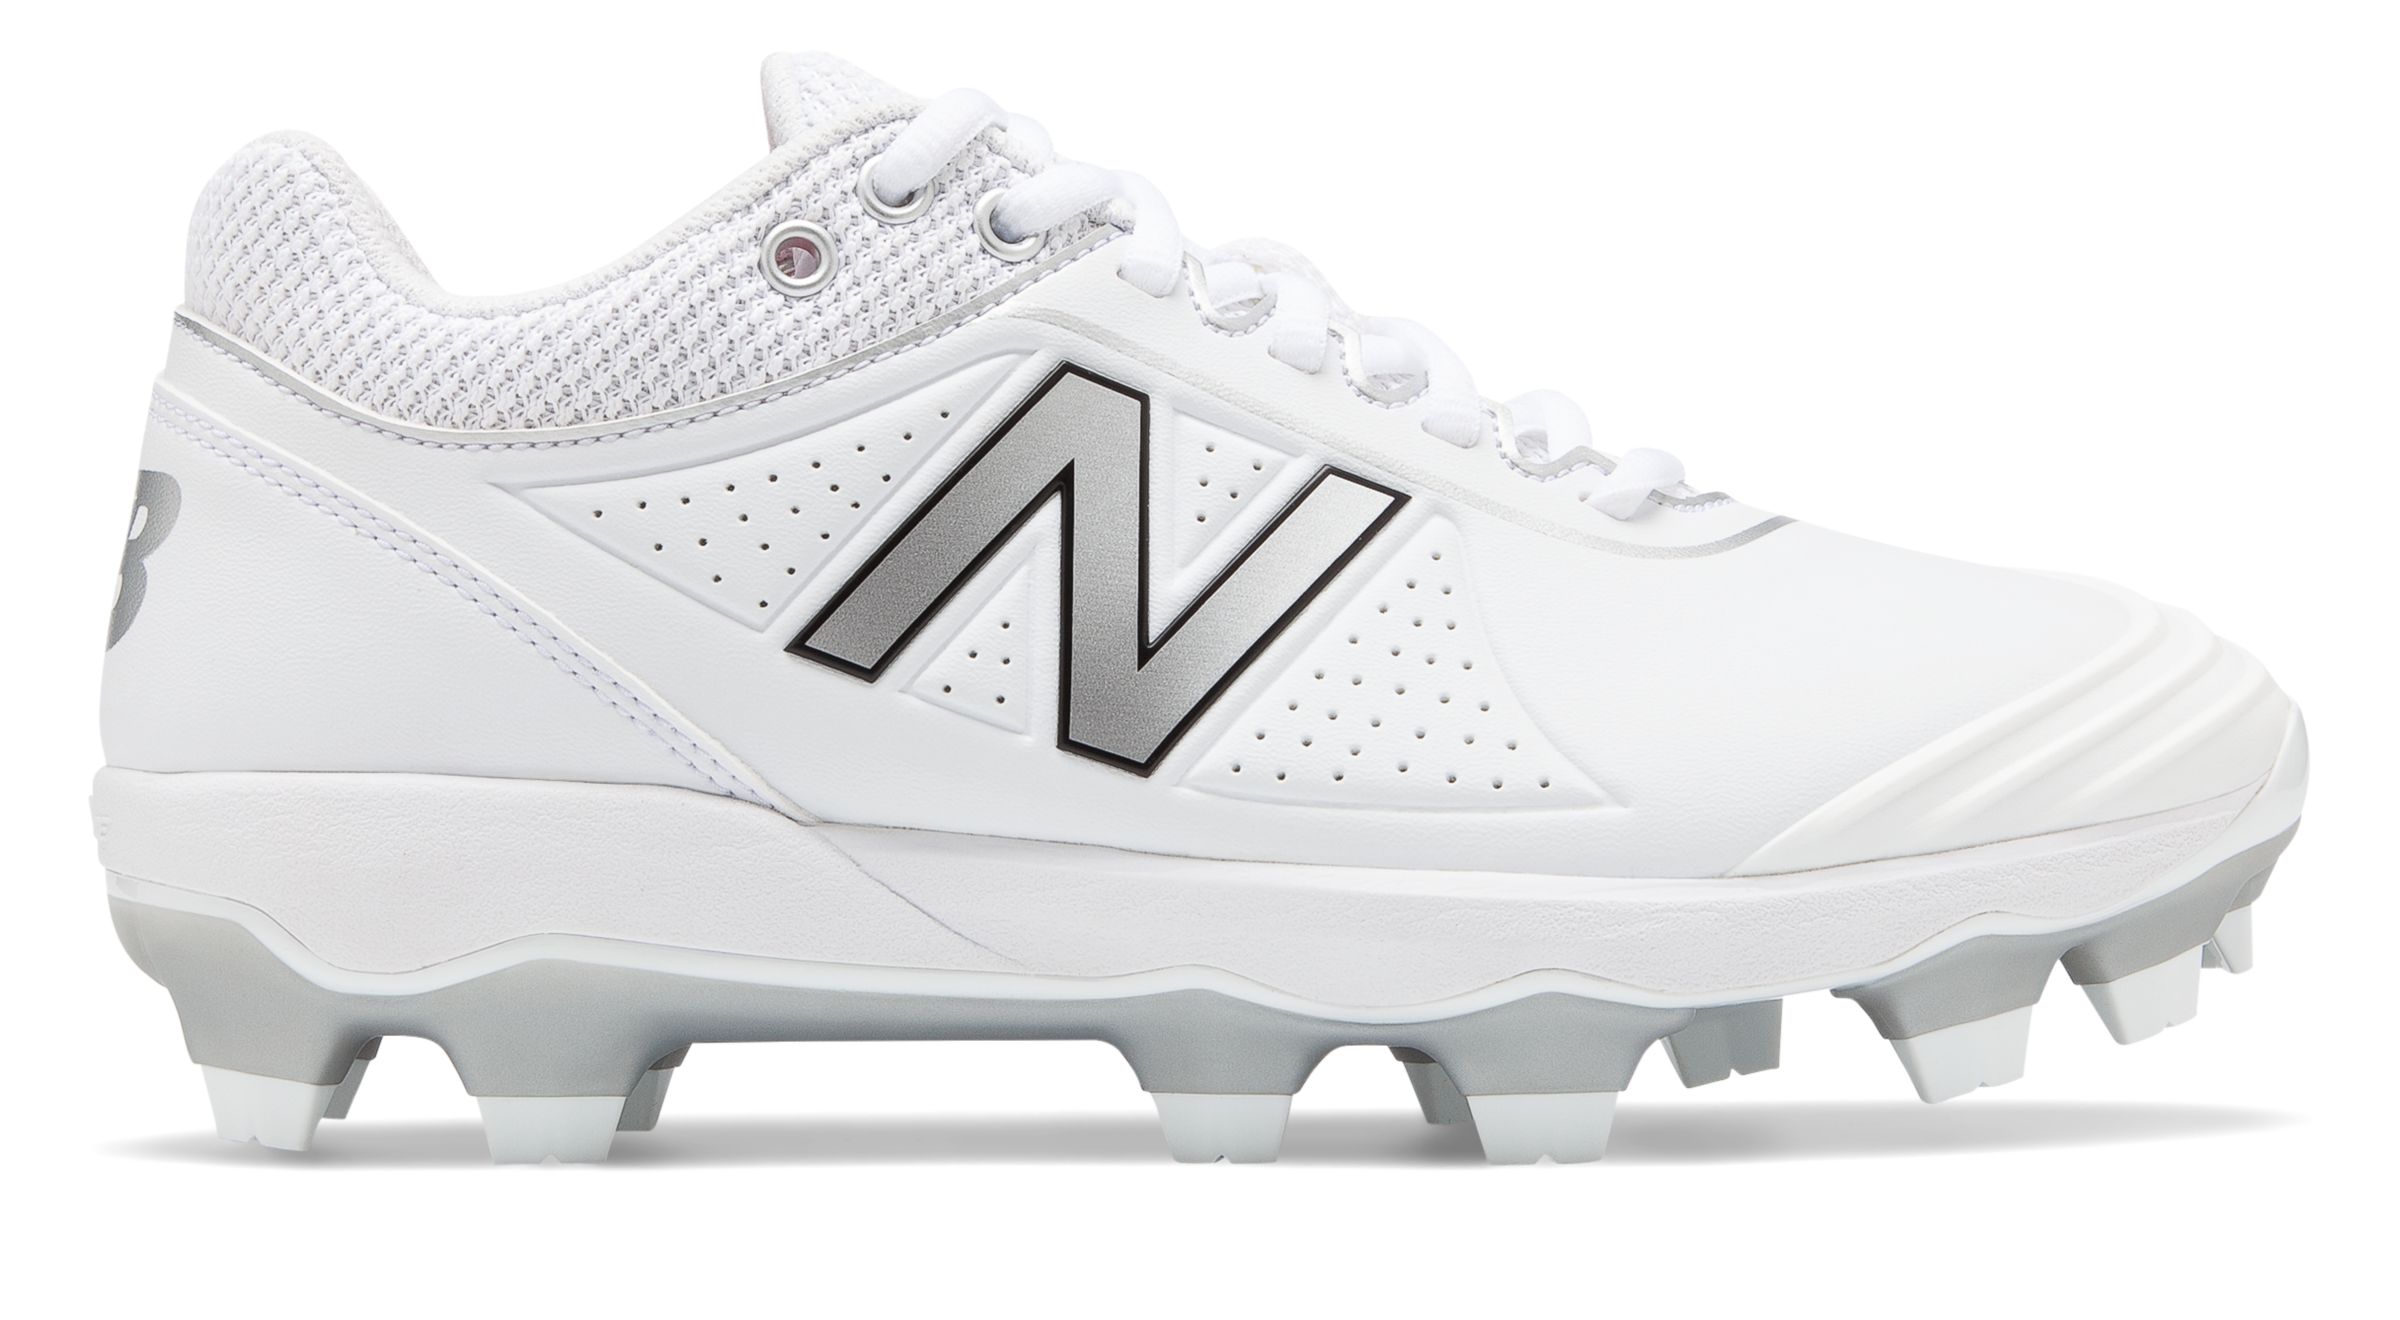 white new balance softball cleats